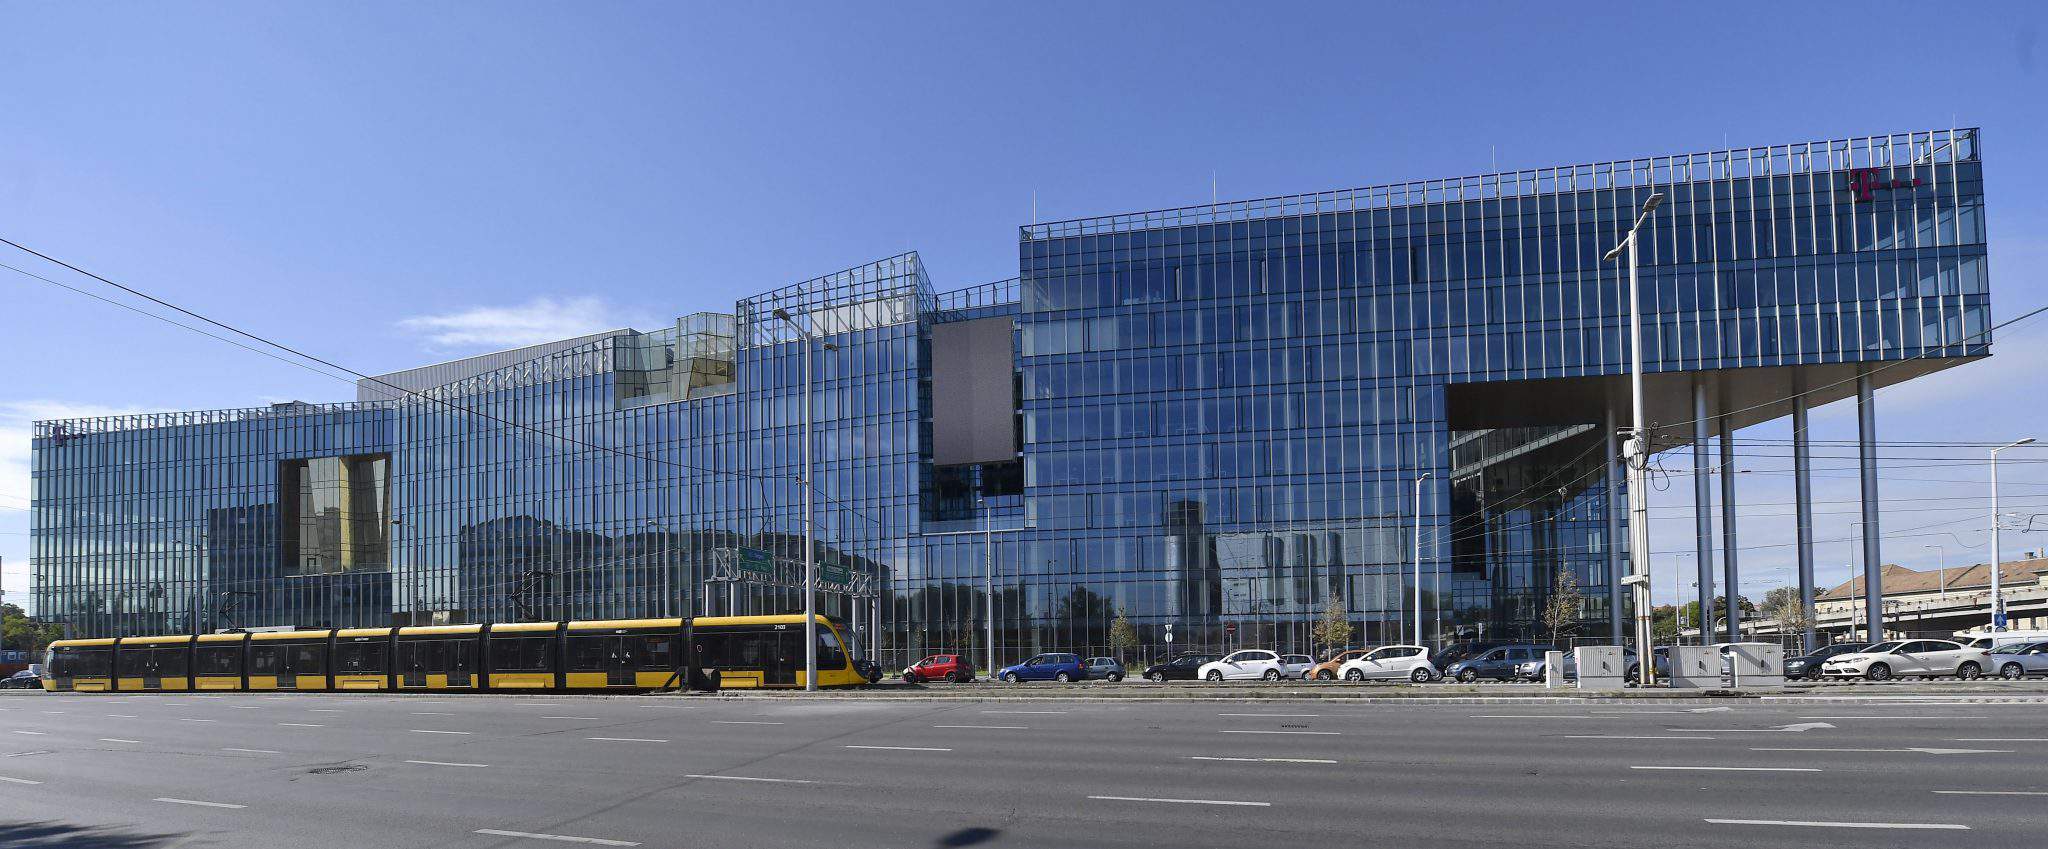 Wing объявила о завершении строительства штаб-квартиры Magyar Telekom и T-Systems стоимостью 50 миллиардов форинтов (154.5 миллиона евро).